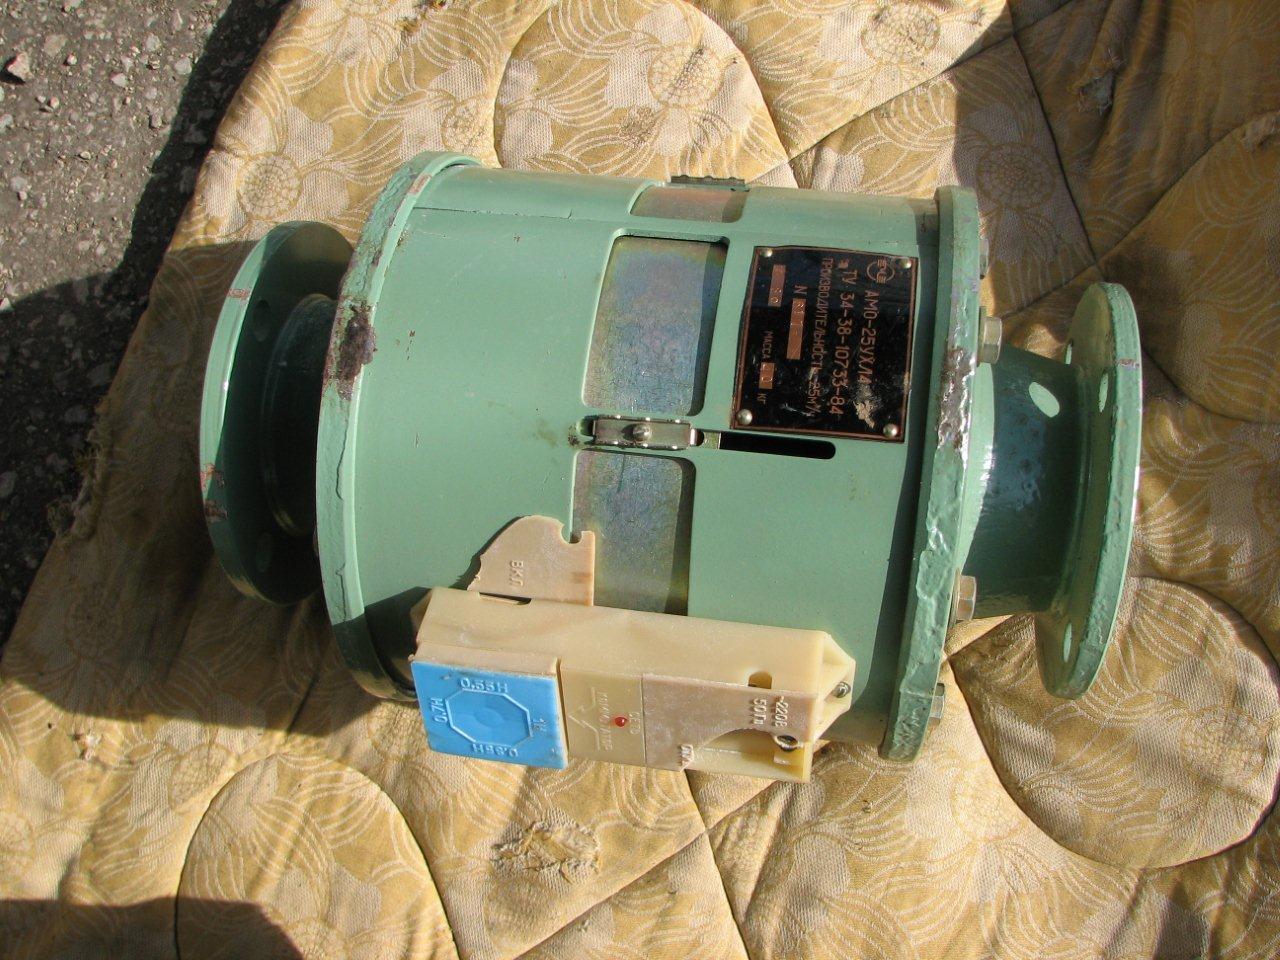 Аппарат магнитной обработки воды АМО — 25 УХЛ — 4